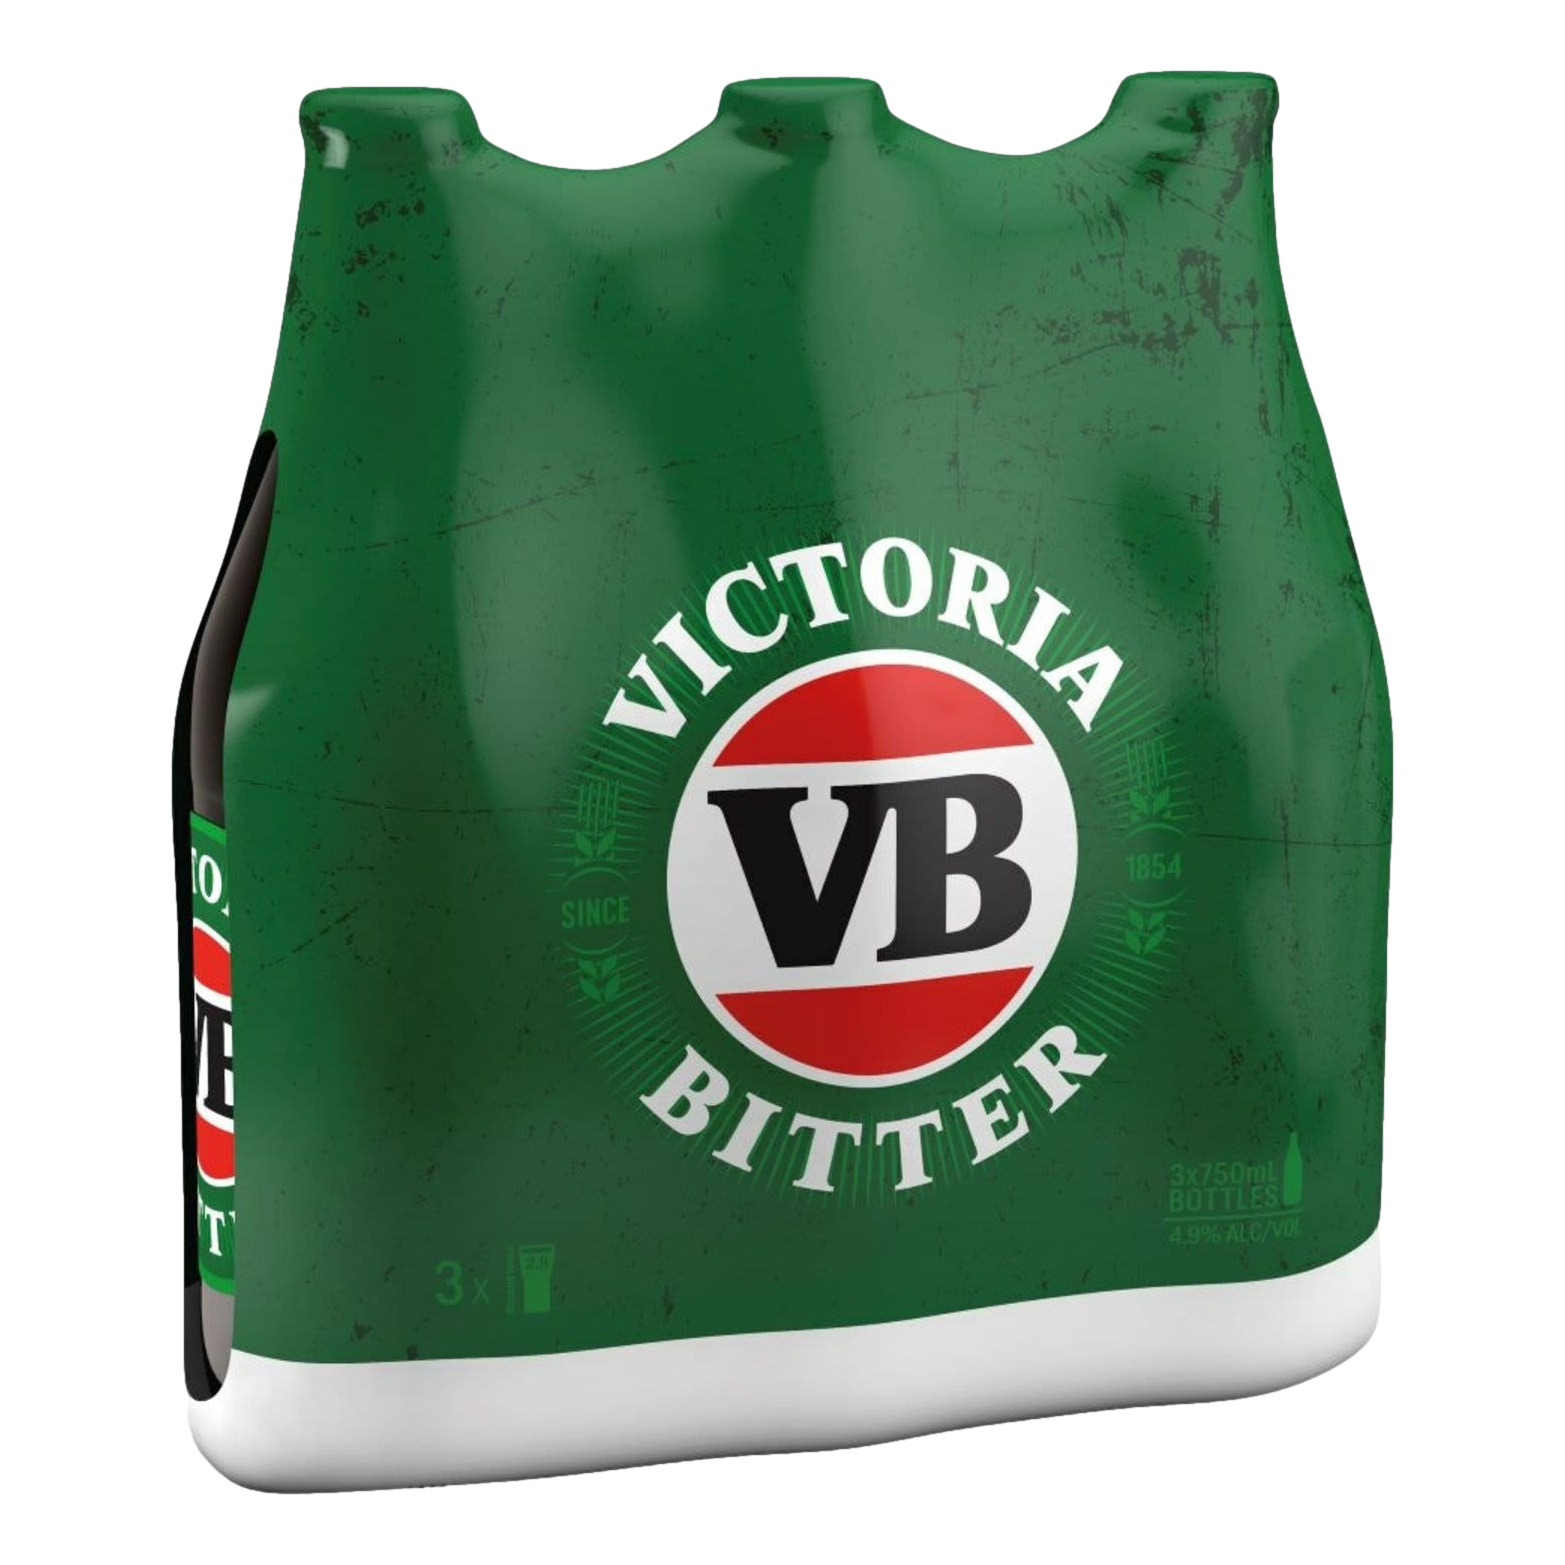 Victoria Bitter Lager 750ml Bottle 3 Pack